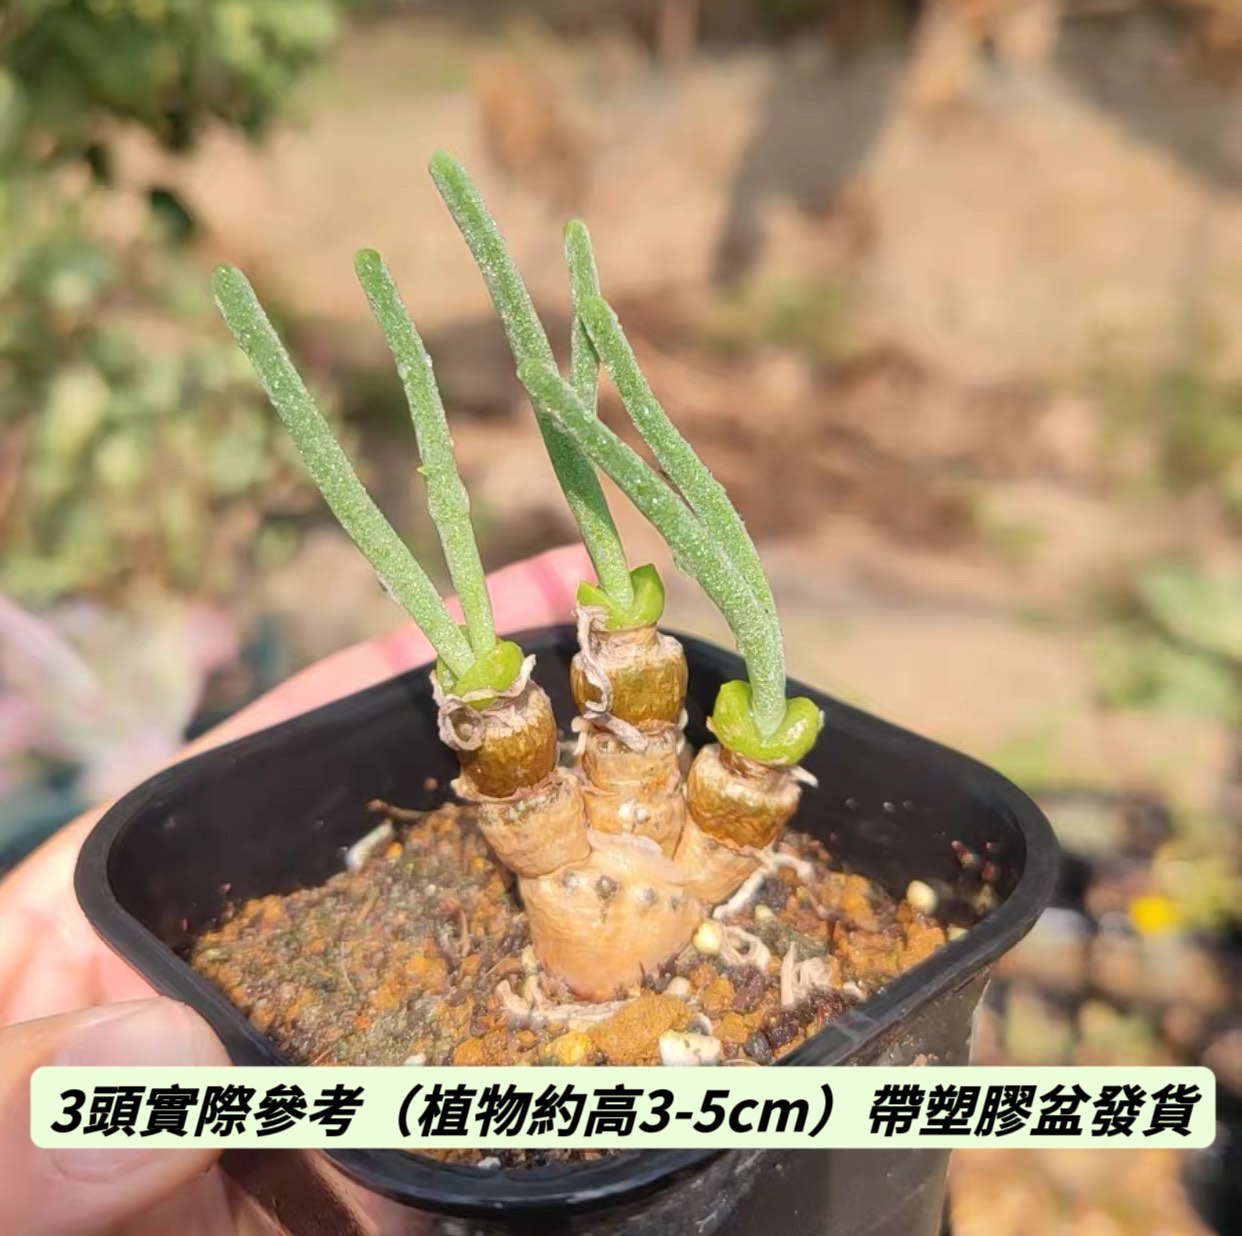 碧光環 Rabbit Shape ( Monilaria obconica )